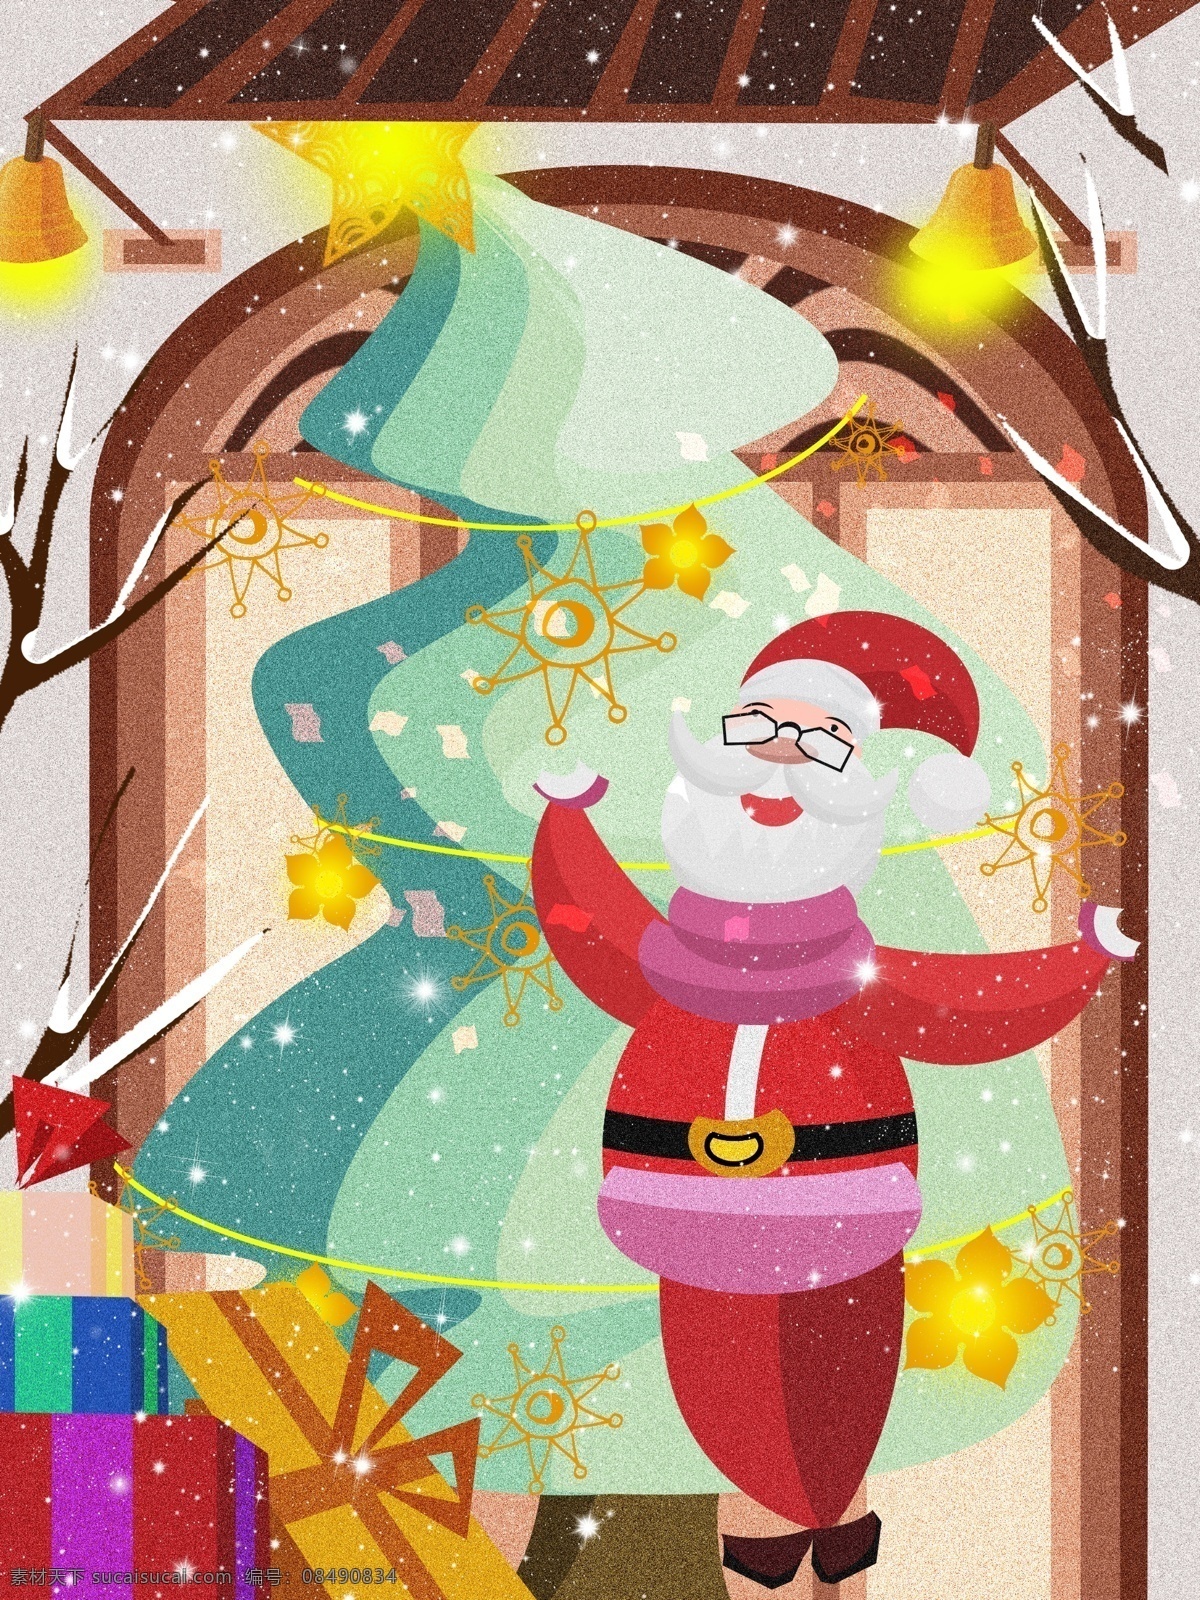 圣诞节 圣诞老人 表演 节目 插画 礼物 星星 雪花 彩带 圣诞树 屋子 圣诞礼物 下雪 雪 节日 氛围